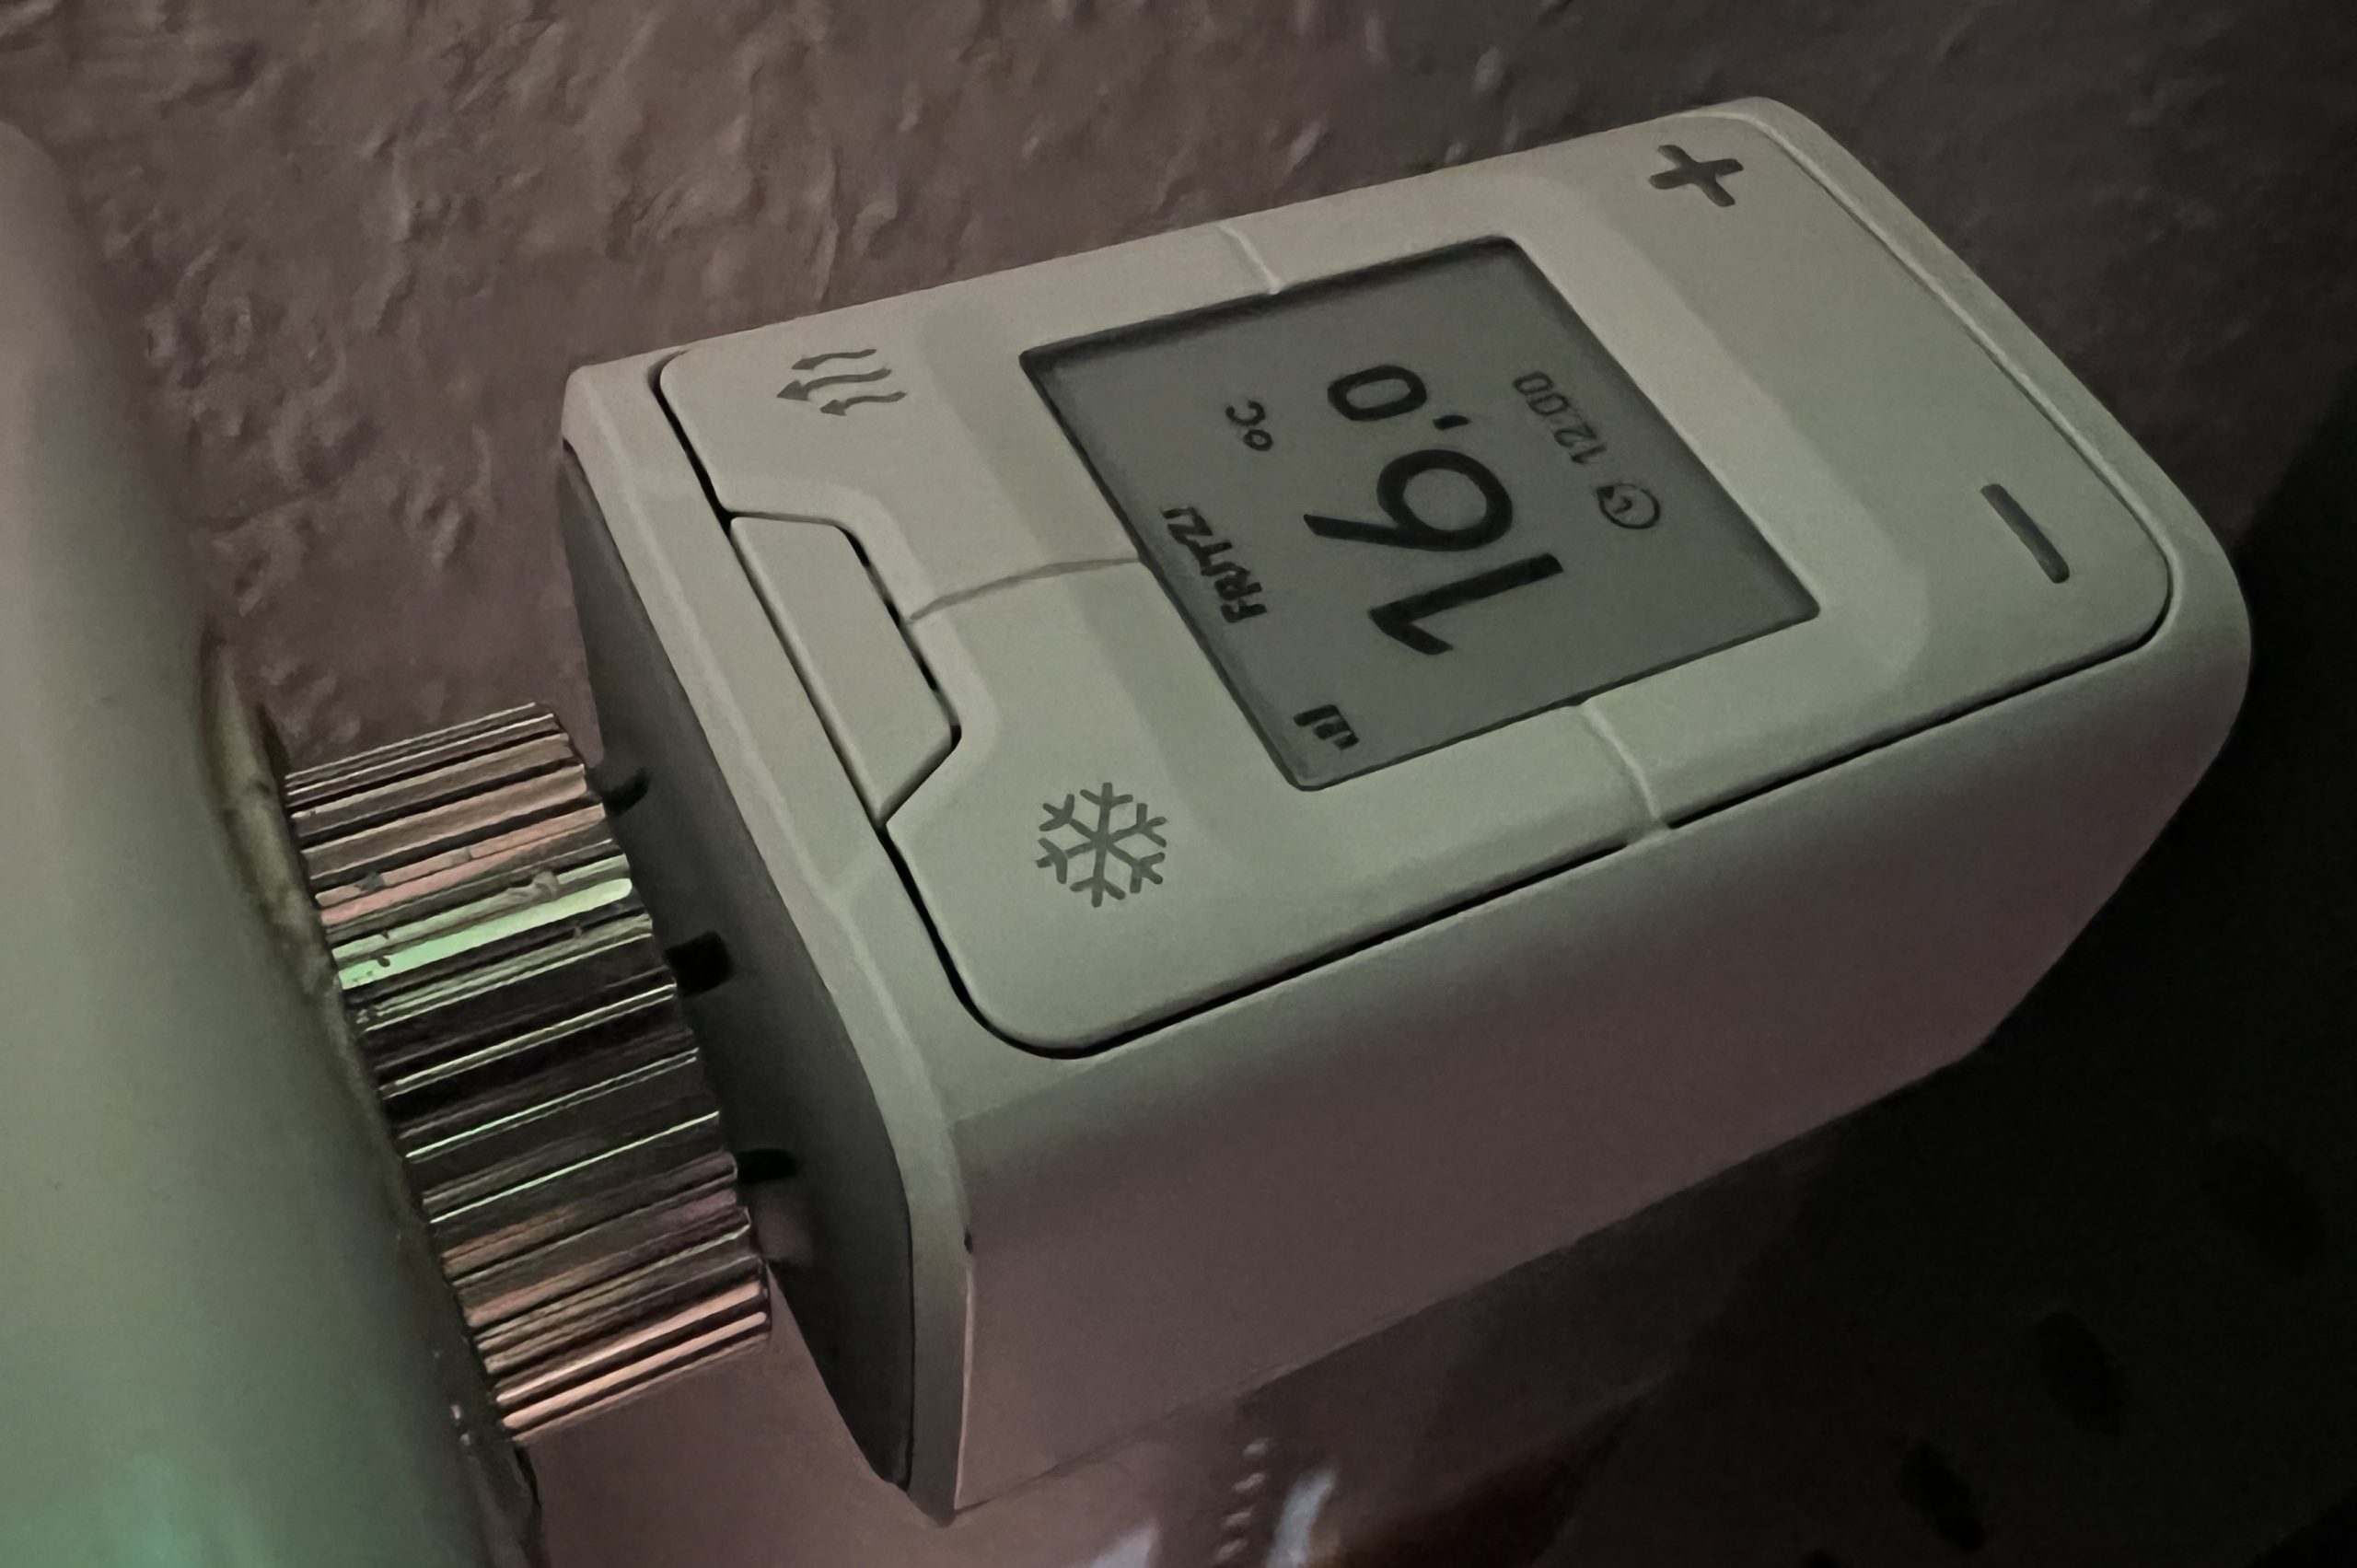 AVM Thermostat de radiateur FRITZ!DECT 302